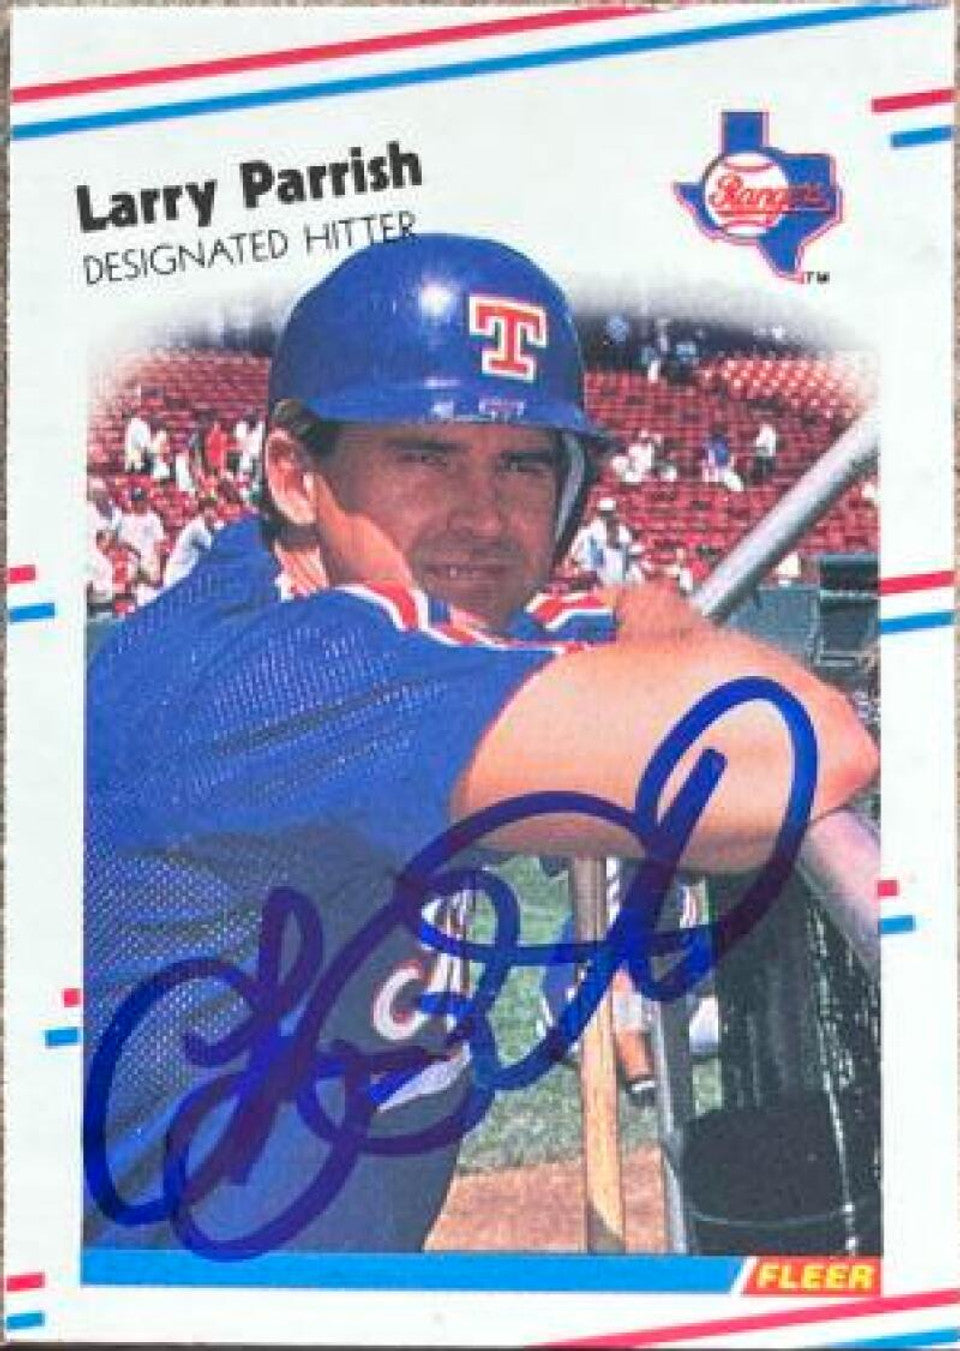 ラリー・パリッシュ サイン入り 1988年 フレア クラシック ミニチュア ベースボール カード - テキサス レンジャーズ